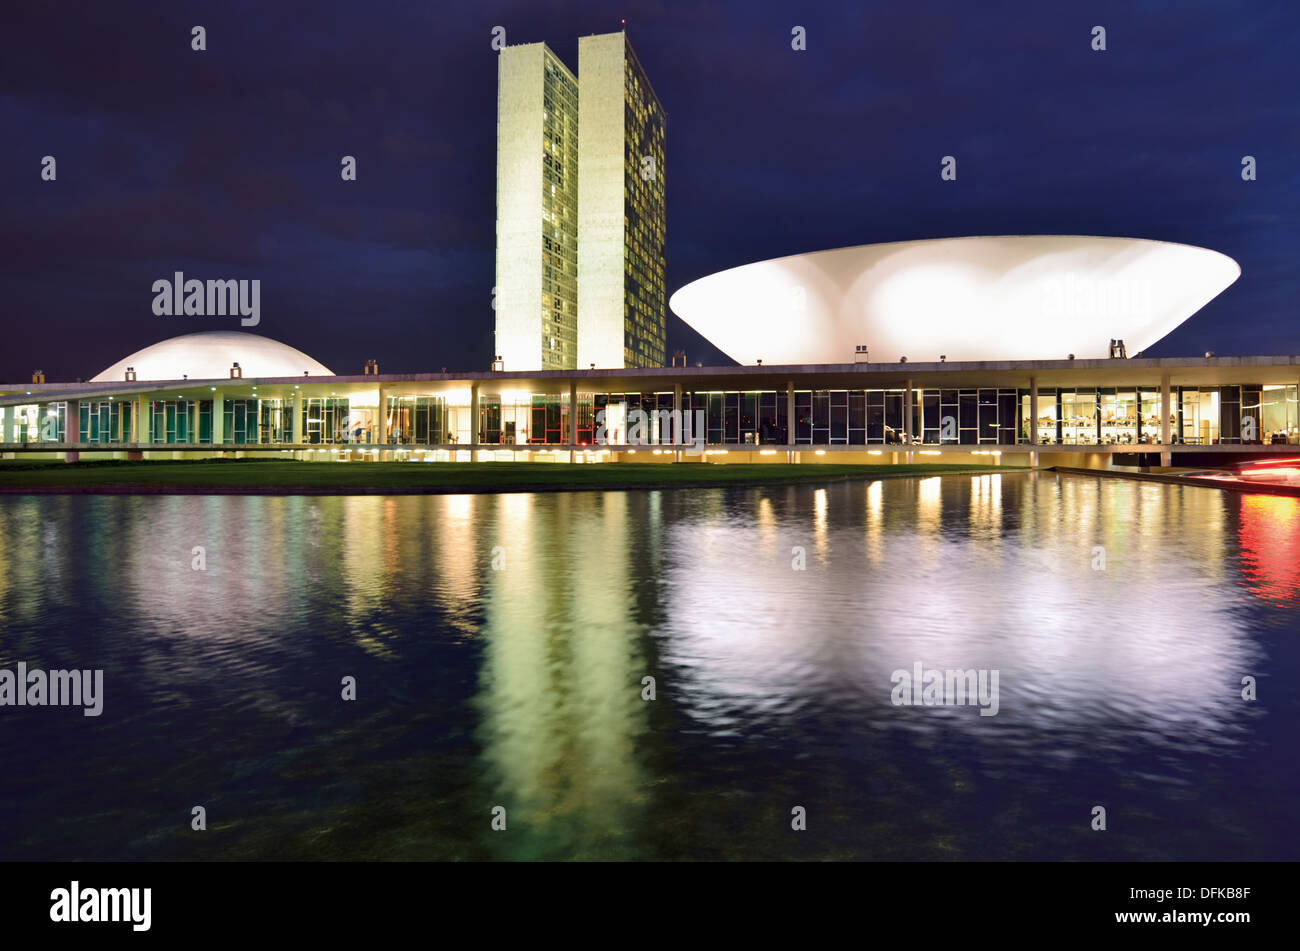 Brasil, Brasilia: Congreso Nacional por la noche Foto de stock